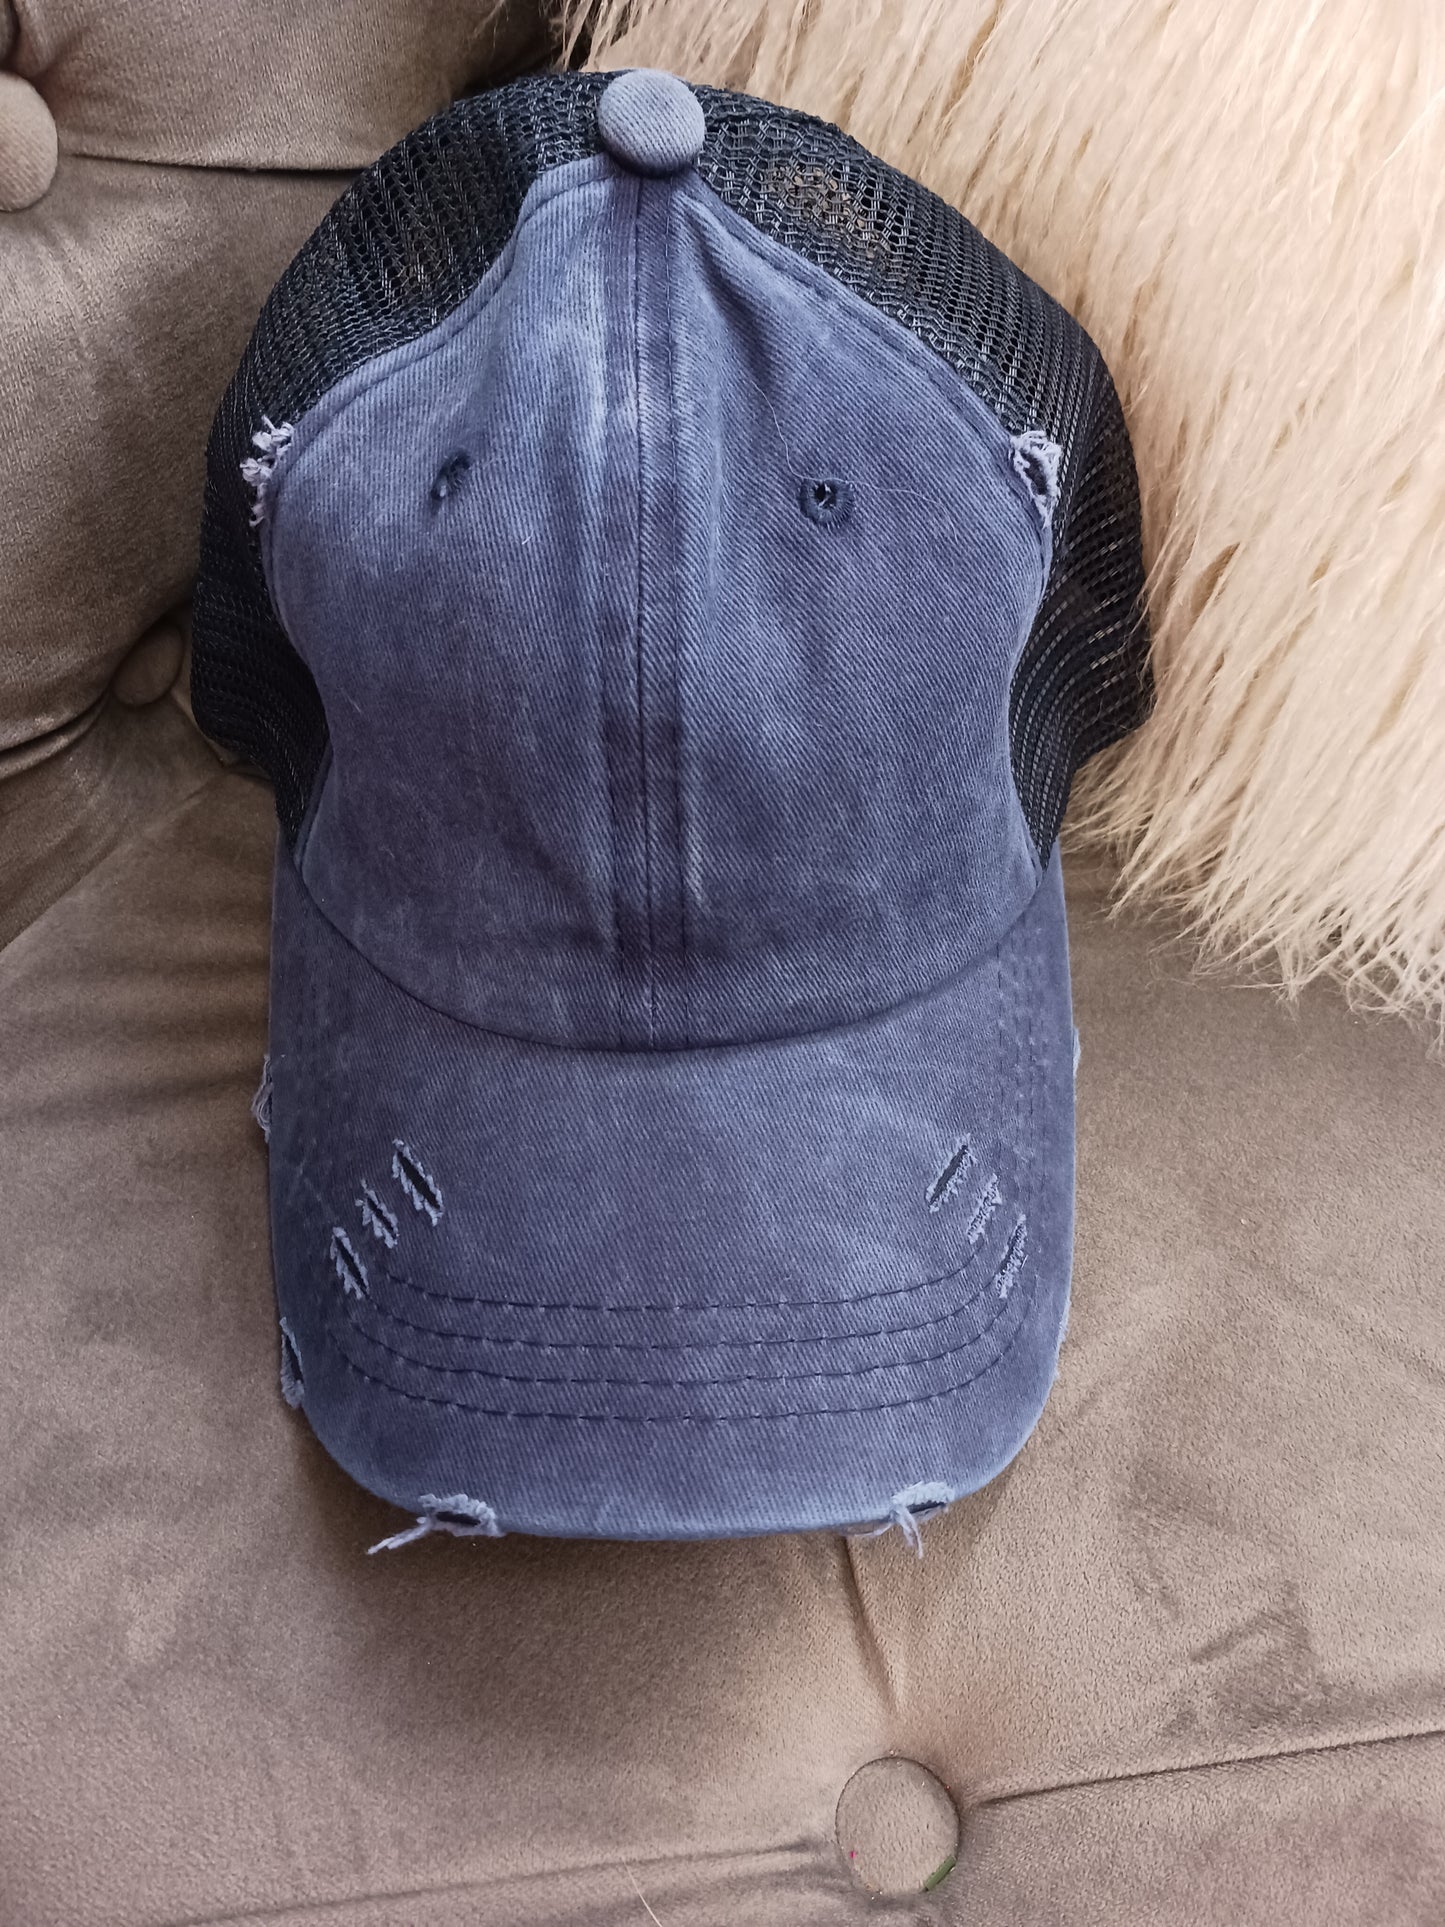 Ponytail Distressed Trucker Hat